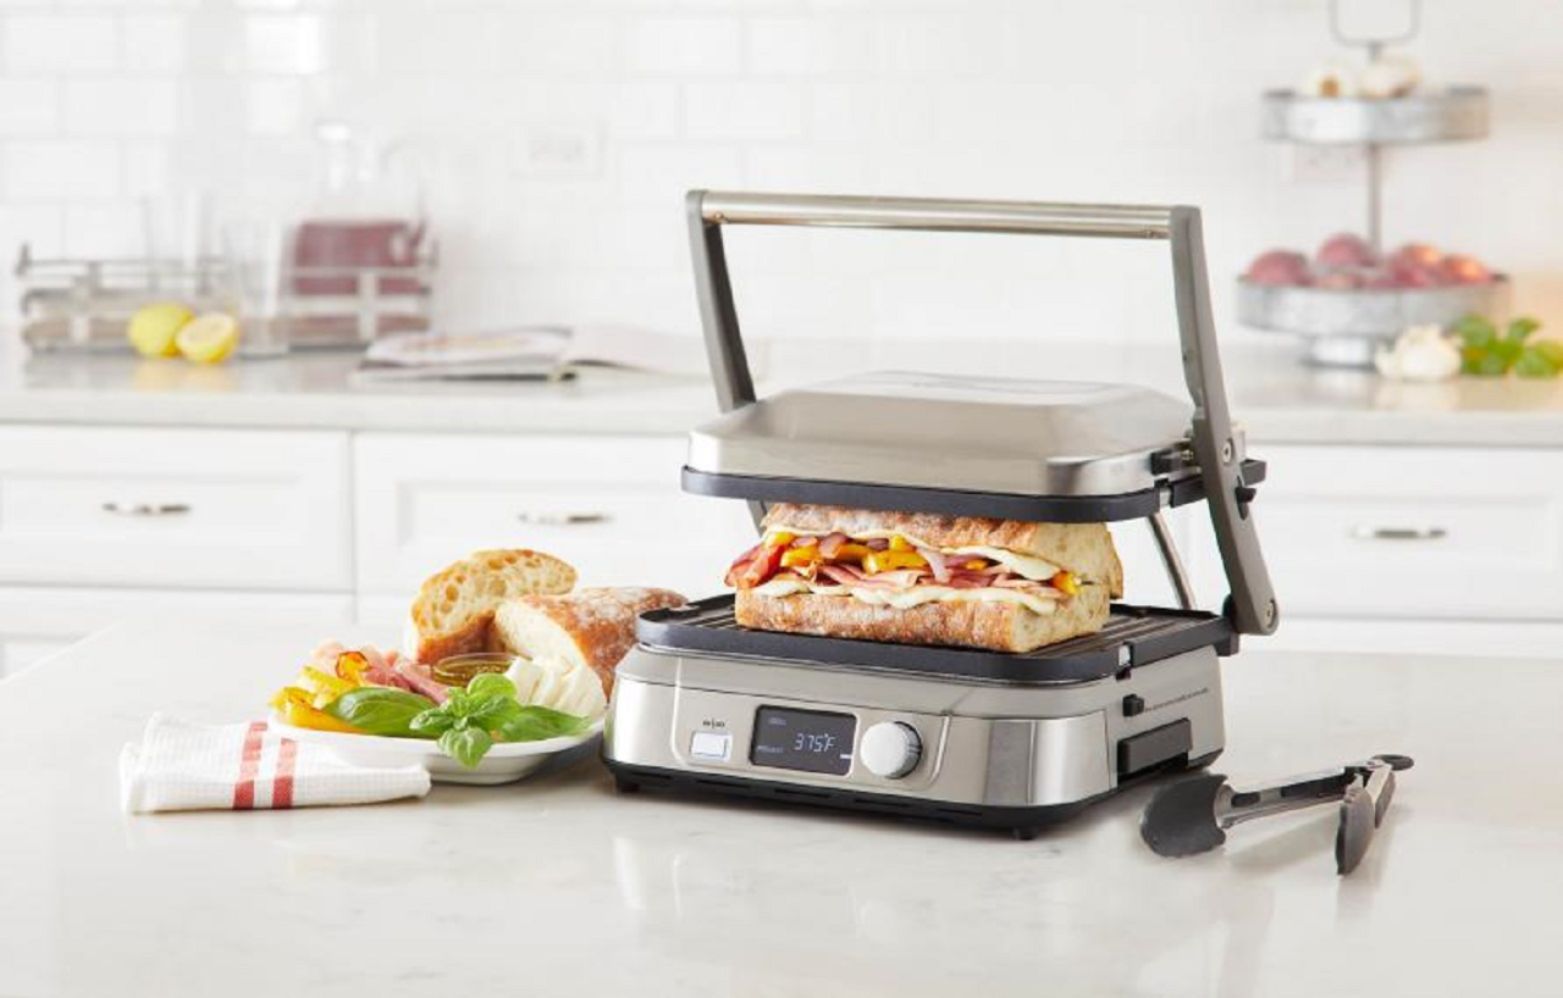 Rent to Own Cuisinart Cuisinart 5-in-1 Griddler & GE 1200 Watt 2 cu. ft.  Countertop Microwave at Aaron's today!